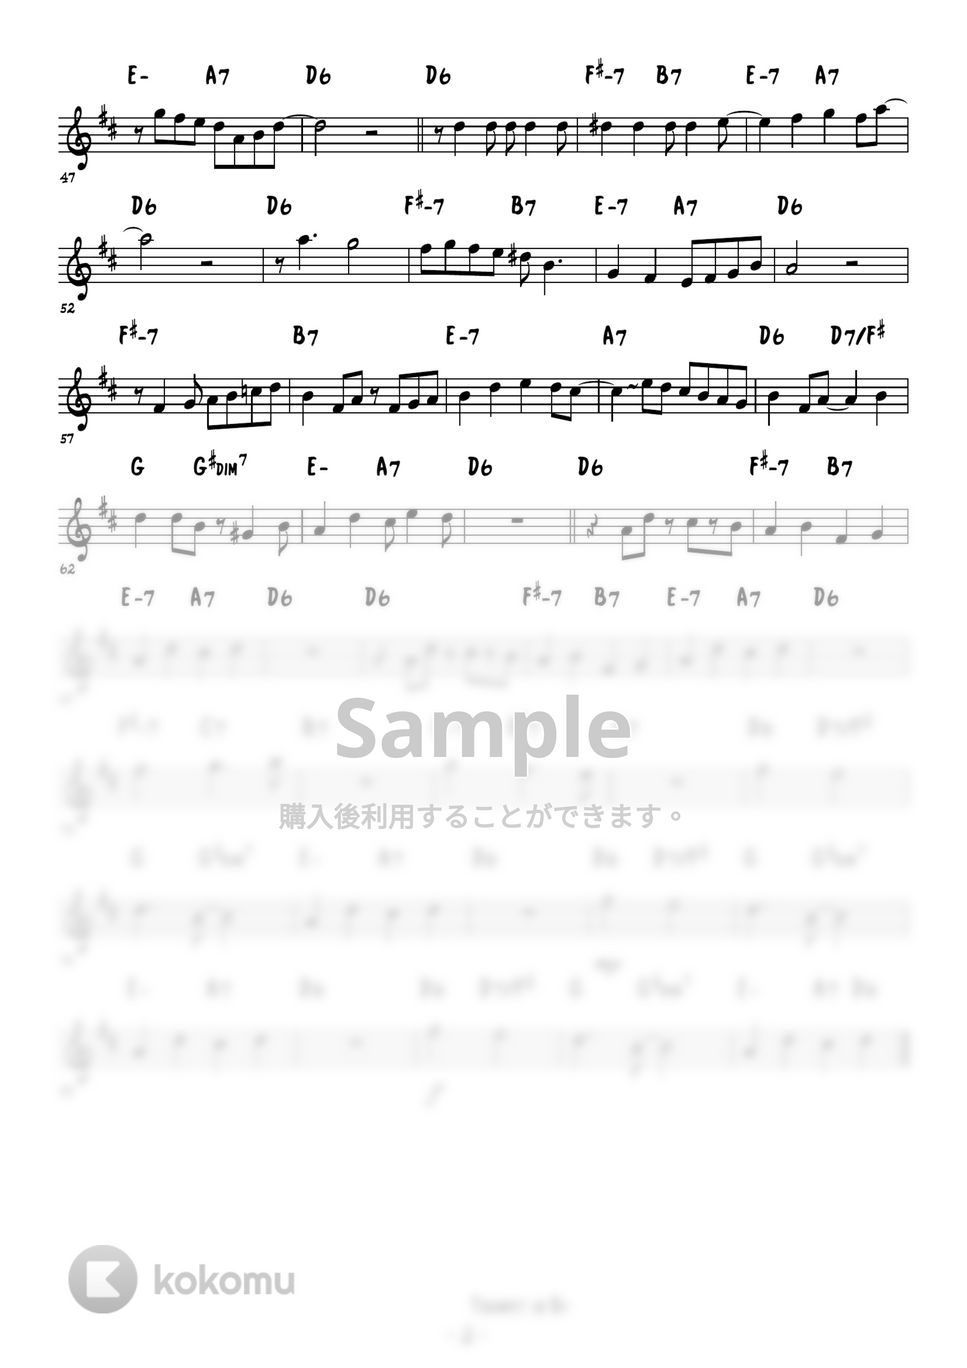 Sonny Rollins - St. Thomas (メロディー演奏例、アドリブソロ例) by 高田将利